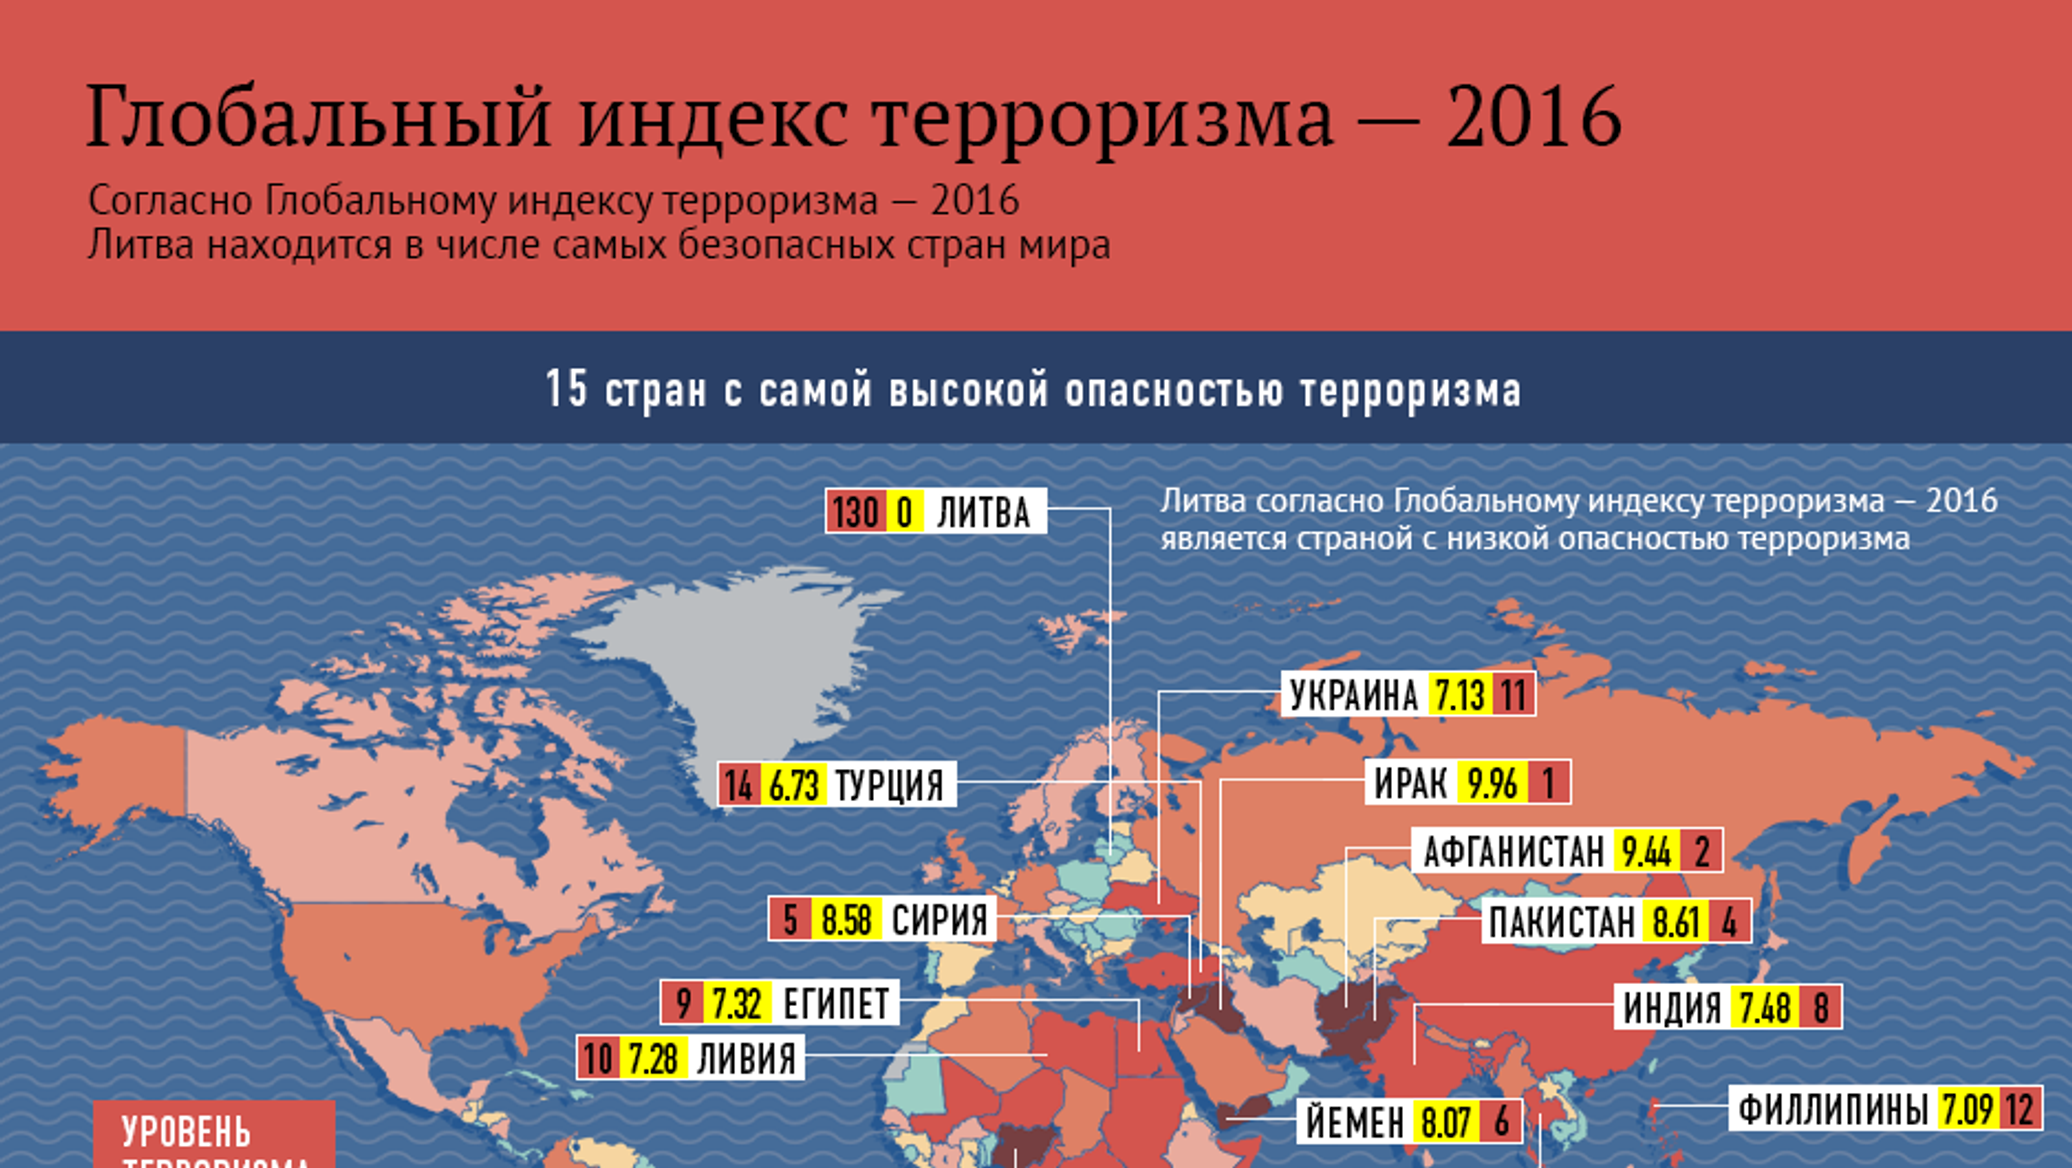 Теракт в 2016 году в россии. Рейтинг стран по уровню терроризма. Статистика преступности по странам.